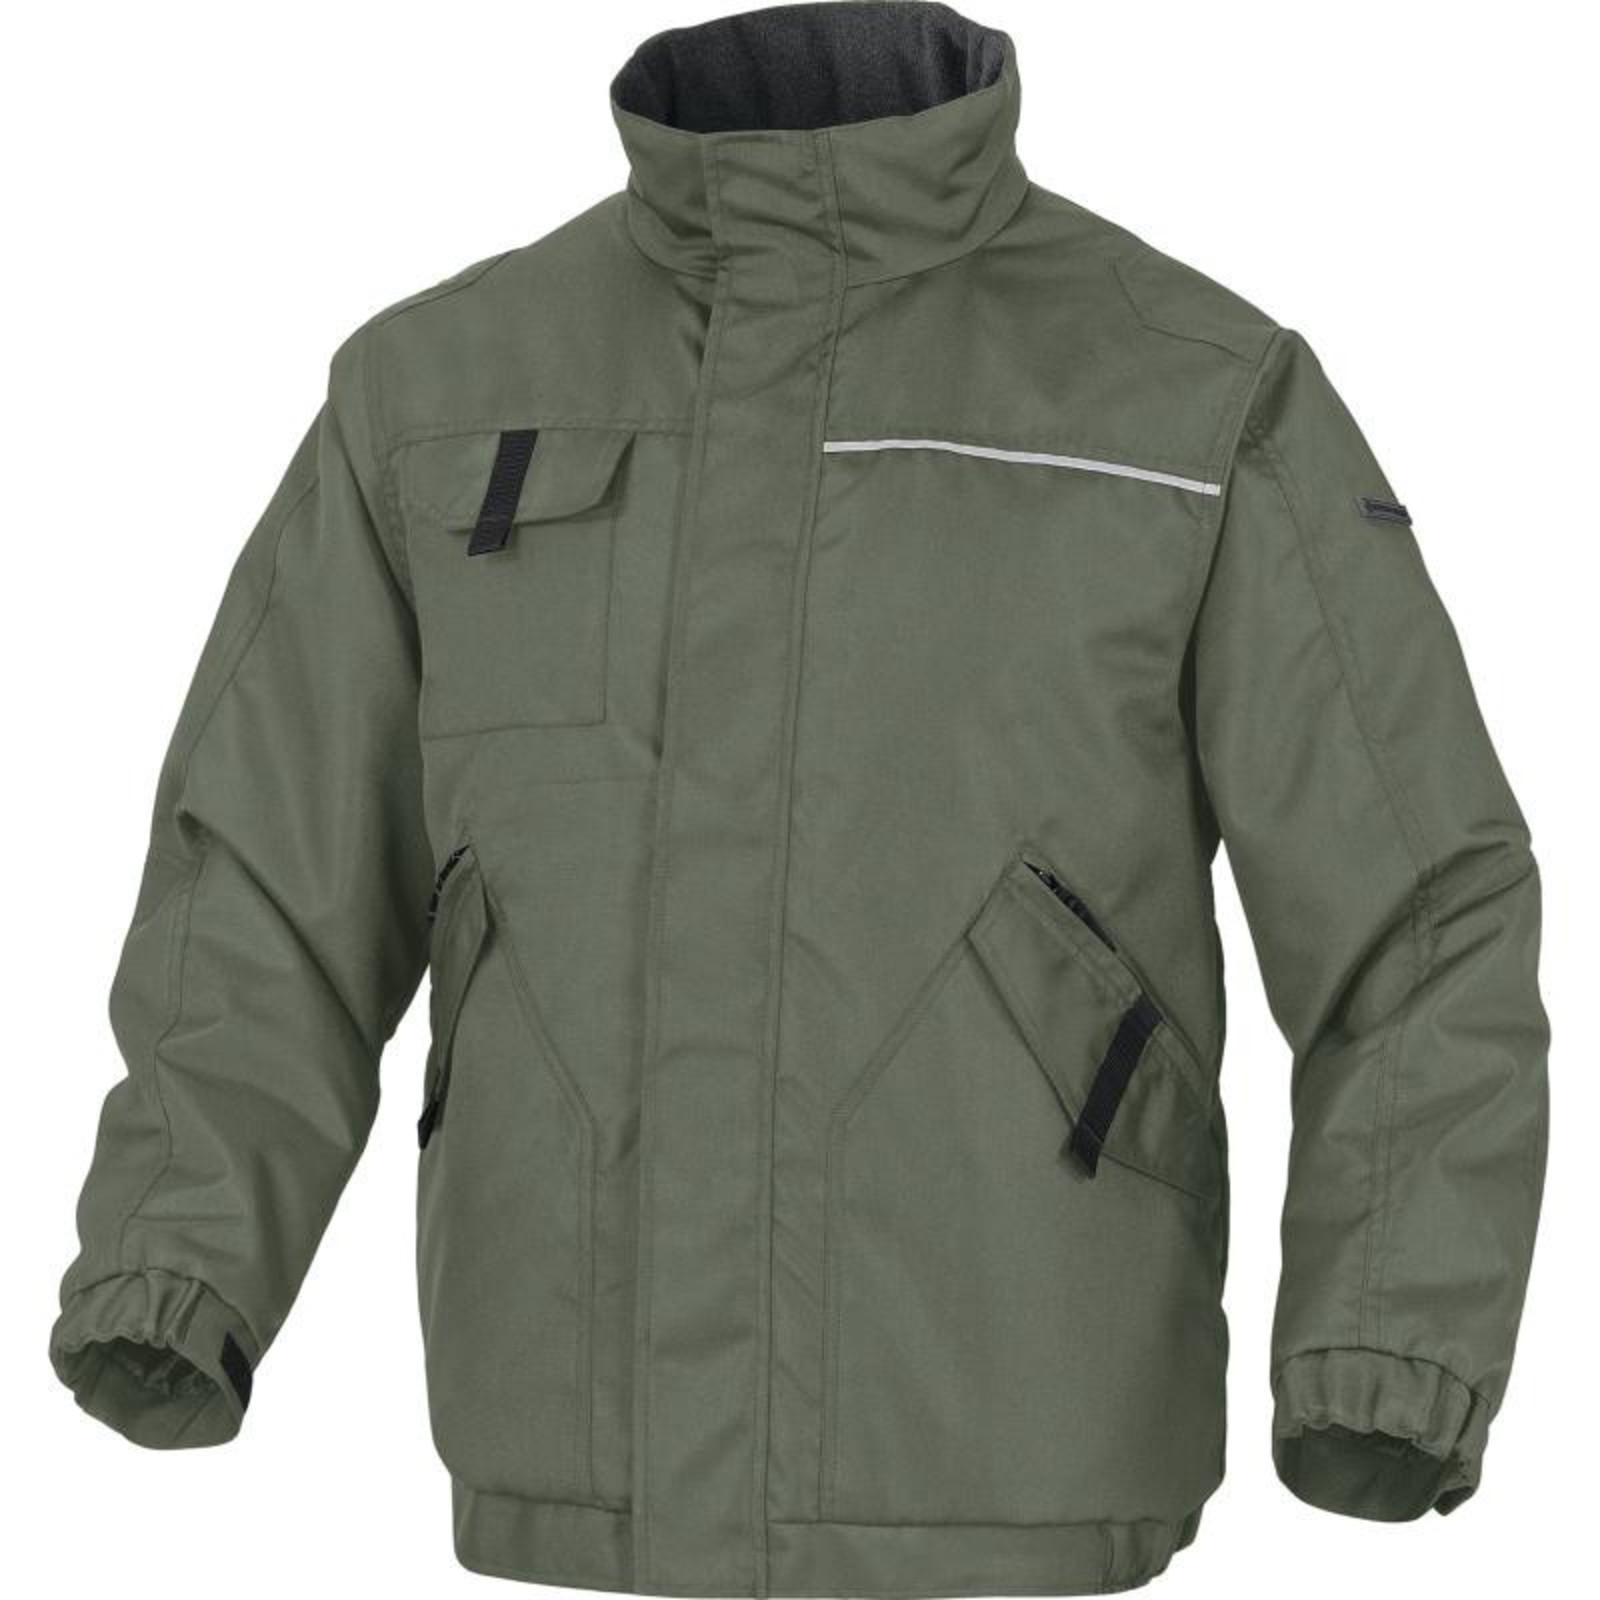 Zimná pracovná bunda Delta Plus Northwood2 - veľkosť: XXL, farba: zelená/čierna